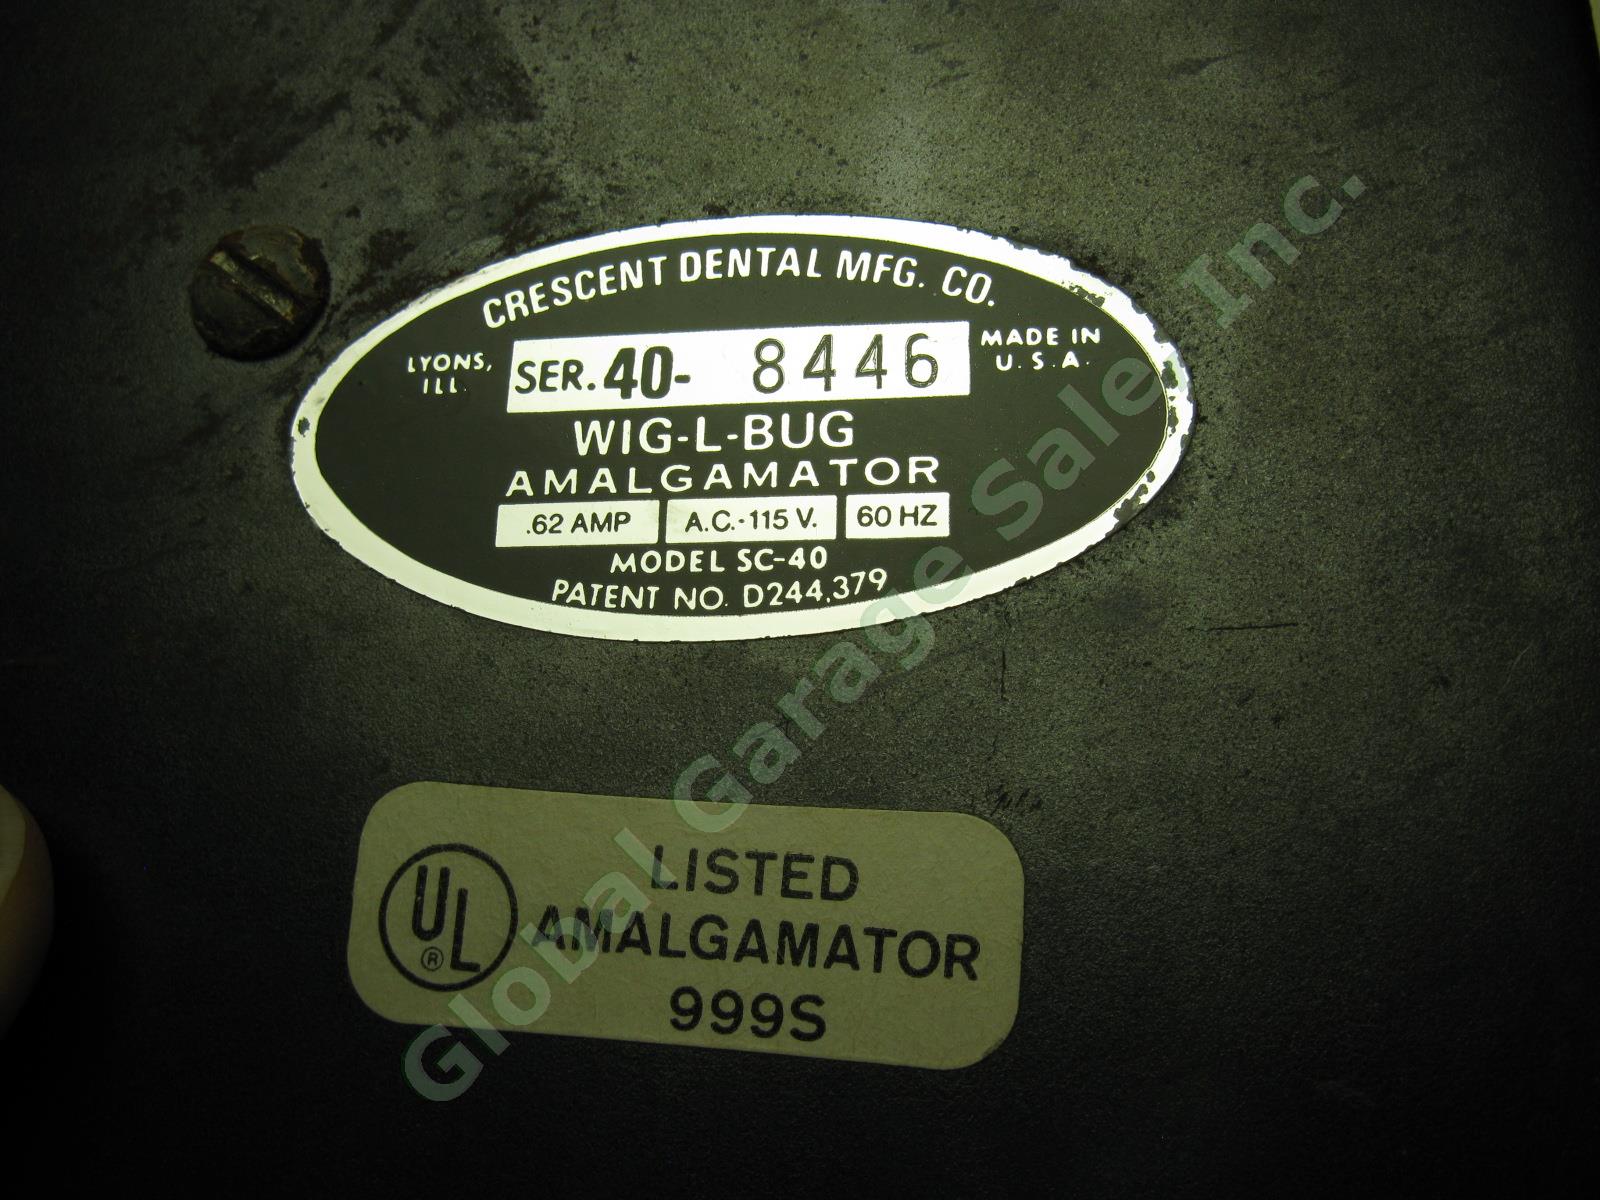 2x Crescent WIG-L-BUG SC-40 Dental Amalgamator Mixer Shakers Lot No Covers Lids 6